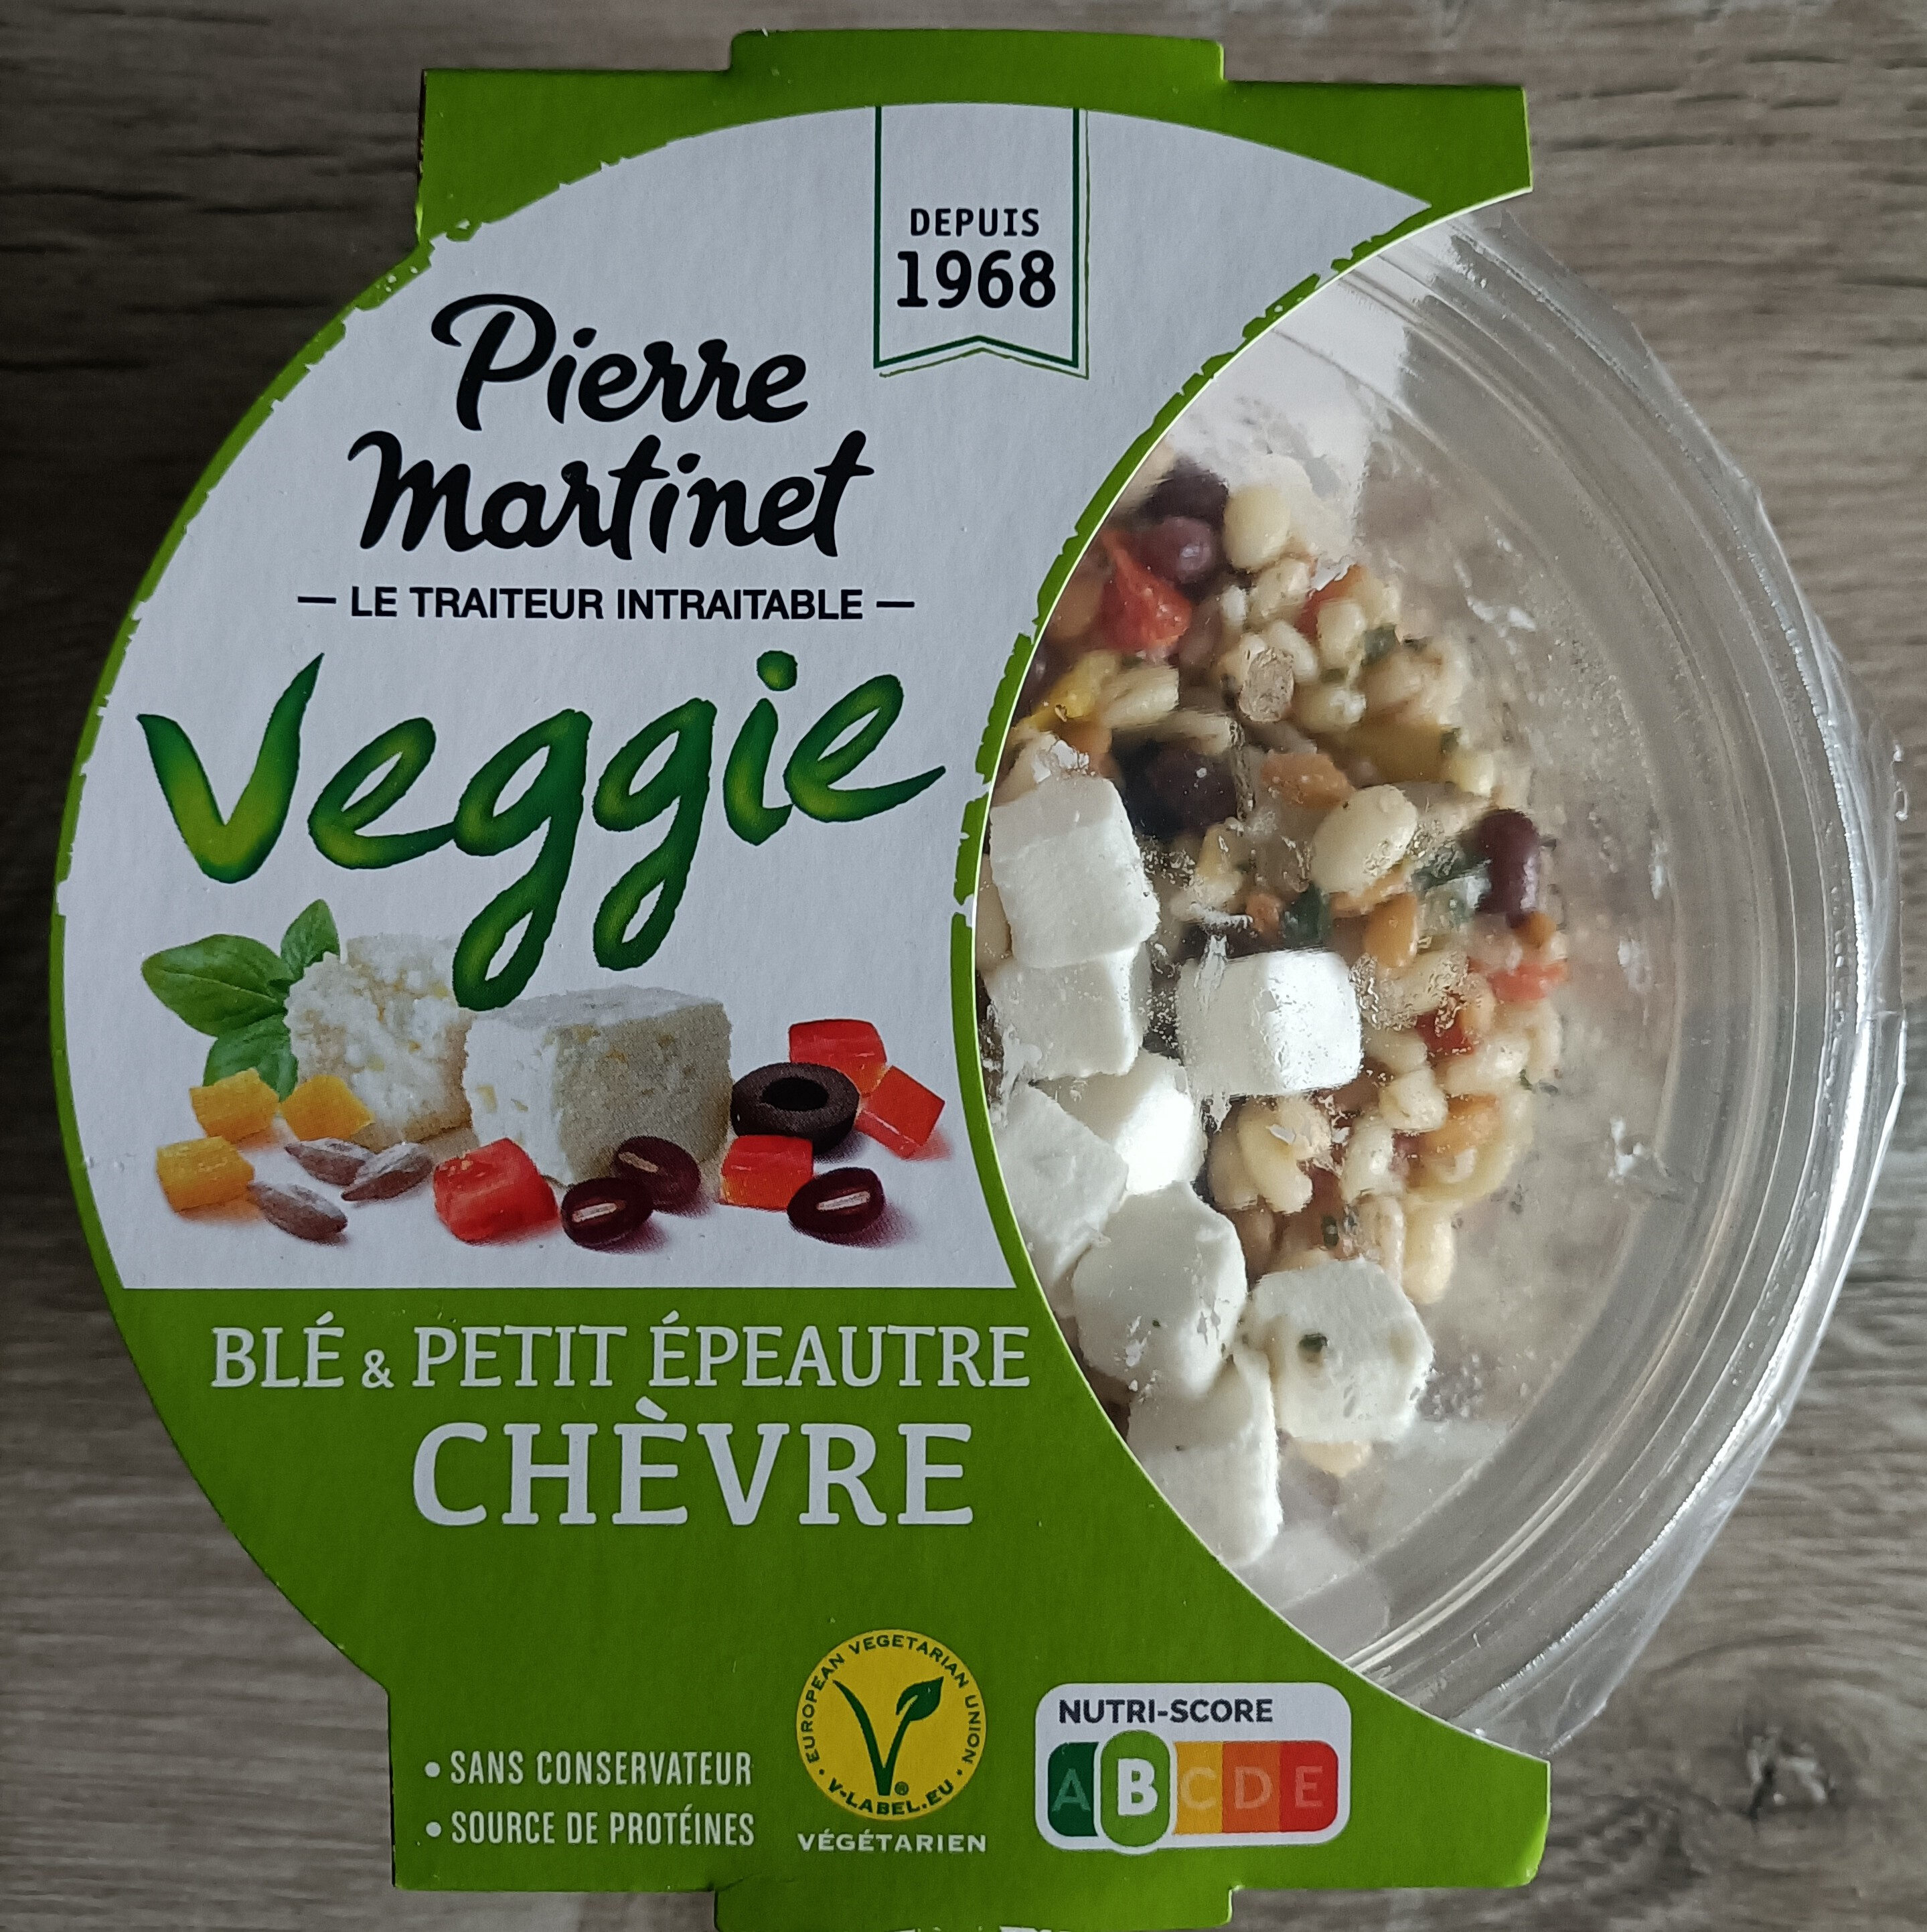 Veggie blé & petit épeautre chèvre - Product - fr